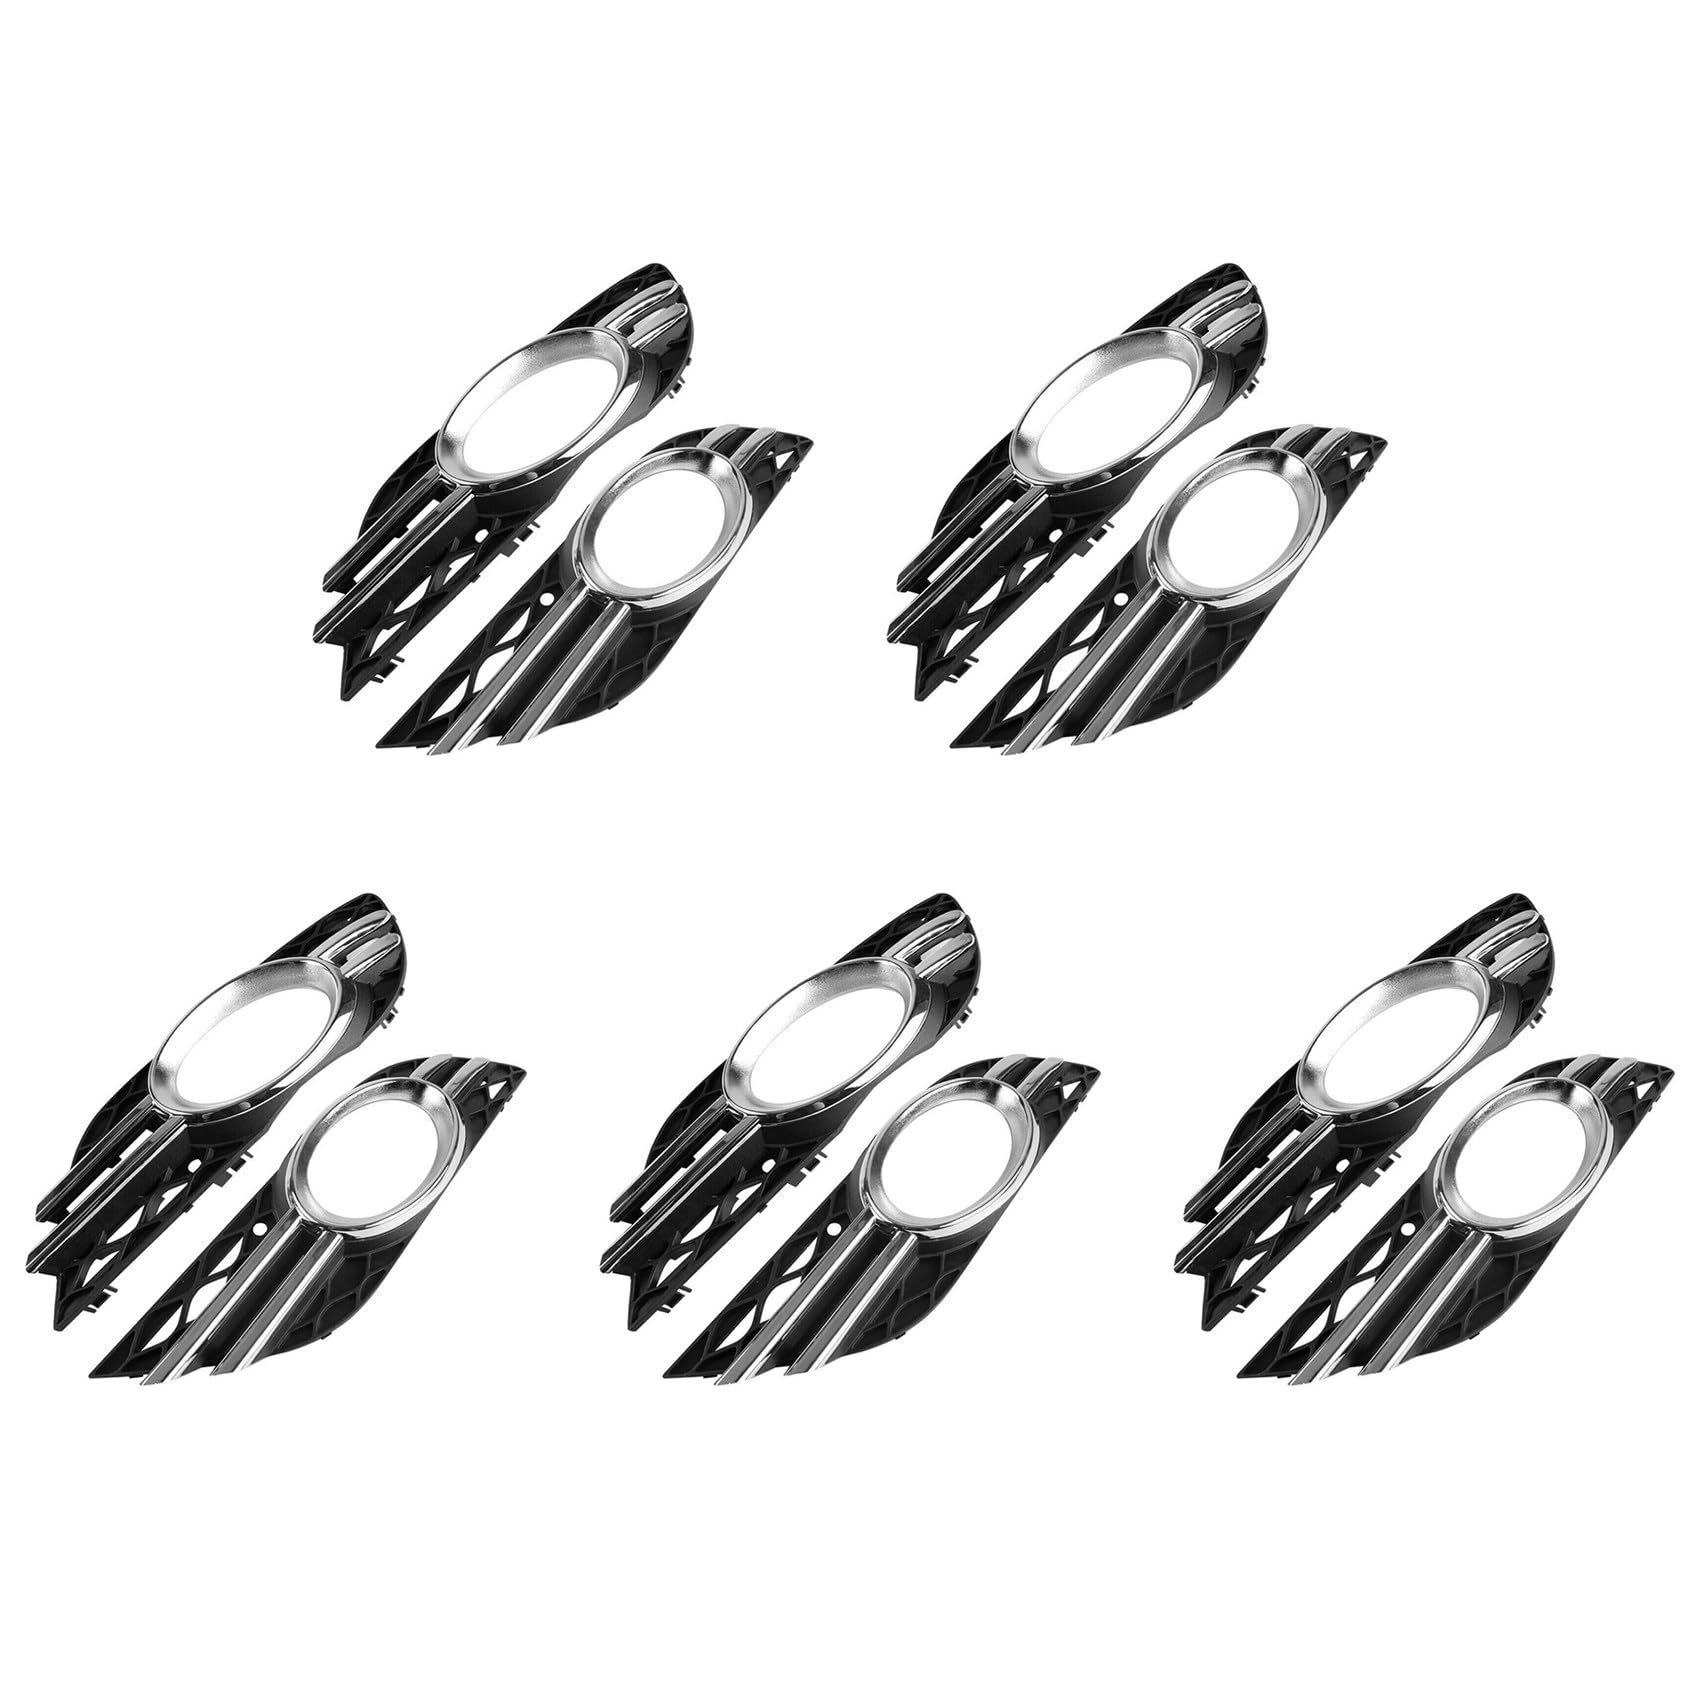 Beelooom 10 x Auto Nebelscheinwerfer Grill Chrom Verkleidung Set für - E-Klasse W211 07-09 A2118851174 A2118851274 von Beelooom